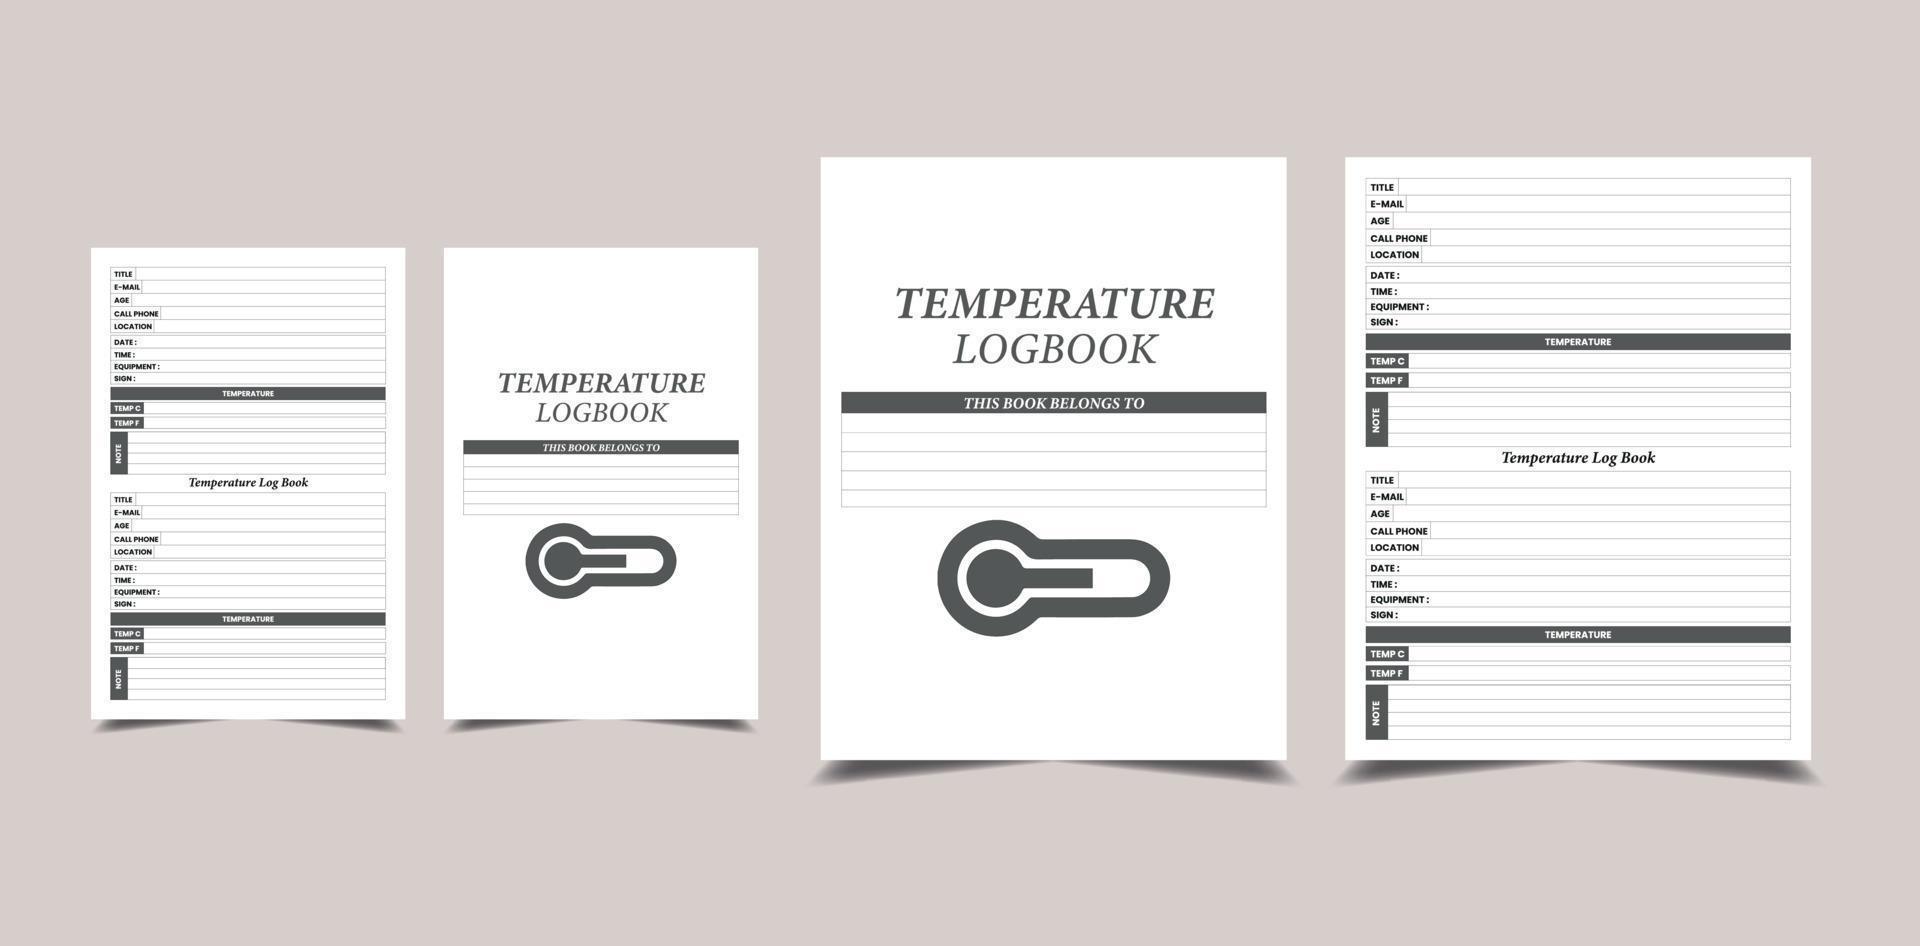 carnet de température intérieur kdp. équipement médical et intérieur de suivi de la température corporelle du patient vecteur